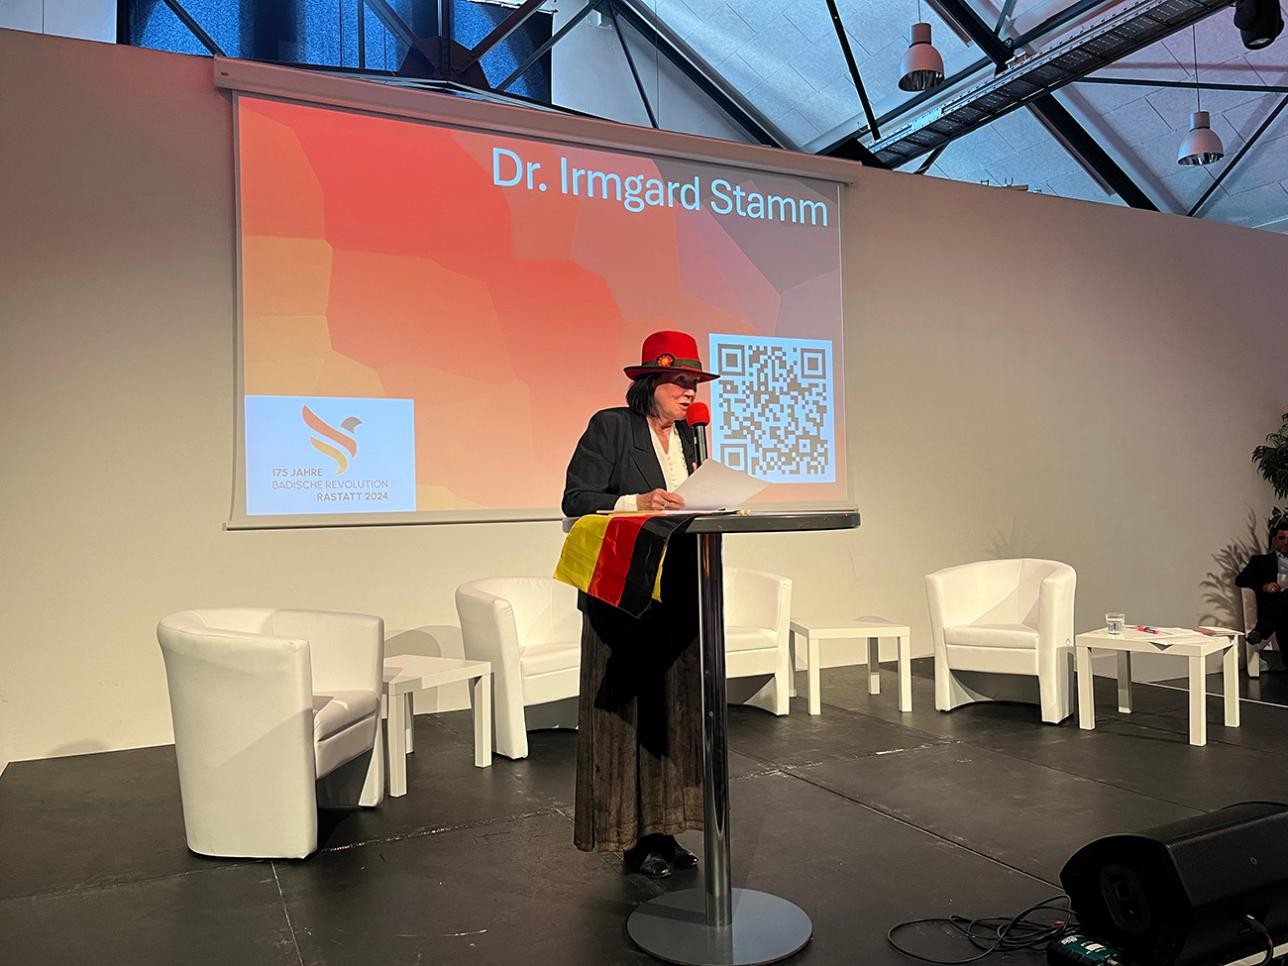 Conférence du Dr Irmgard Stamm, présidente de l'association historique de Rastatt, dans le manège